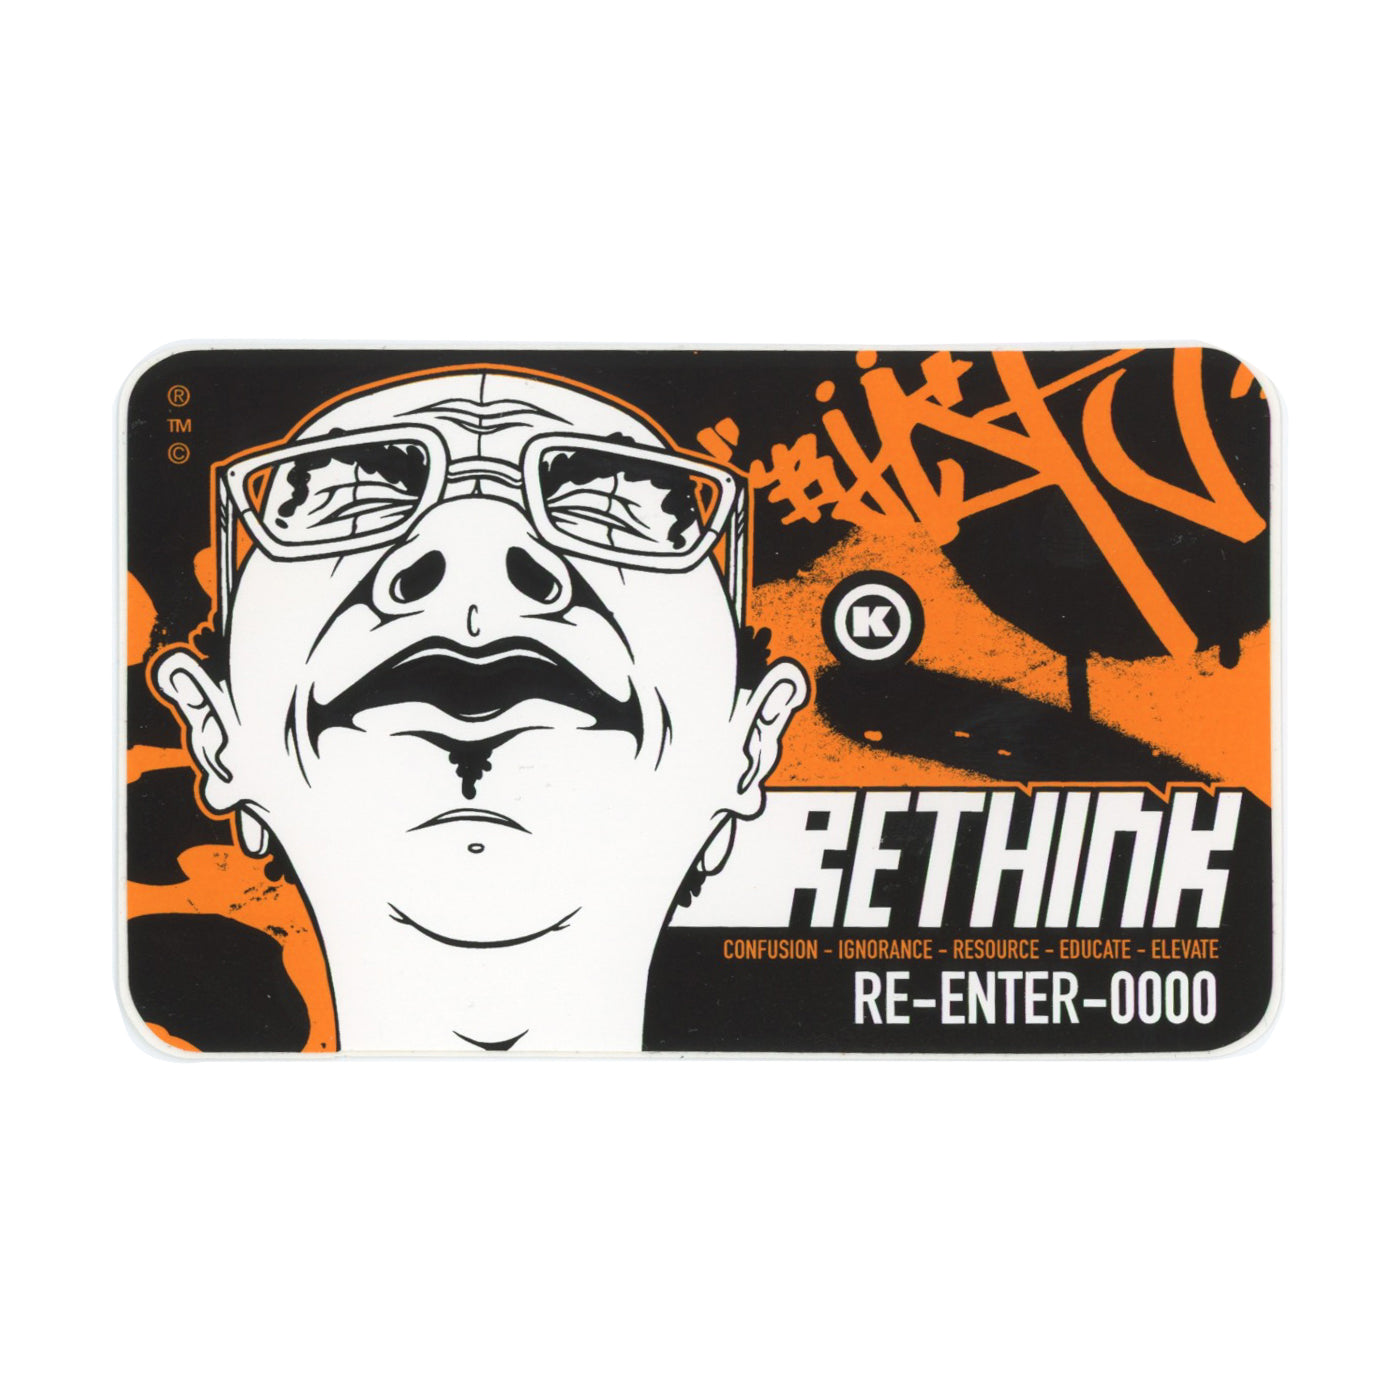 Dave Kinsey RETHINK RE-ENTER-000 Orange Sticker